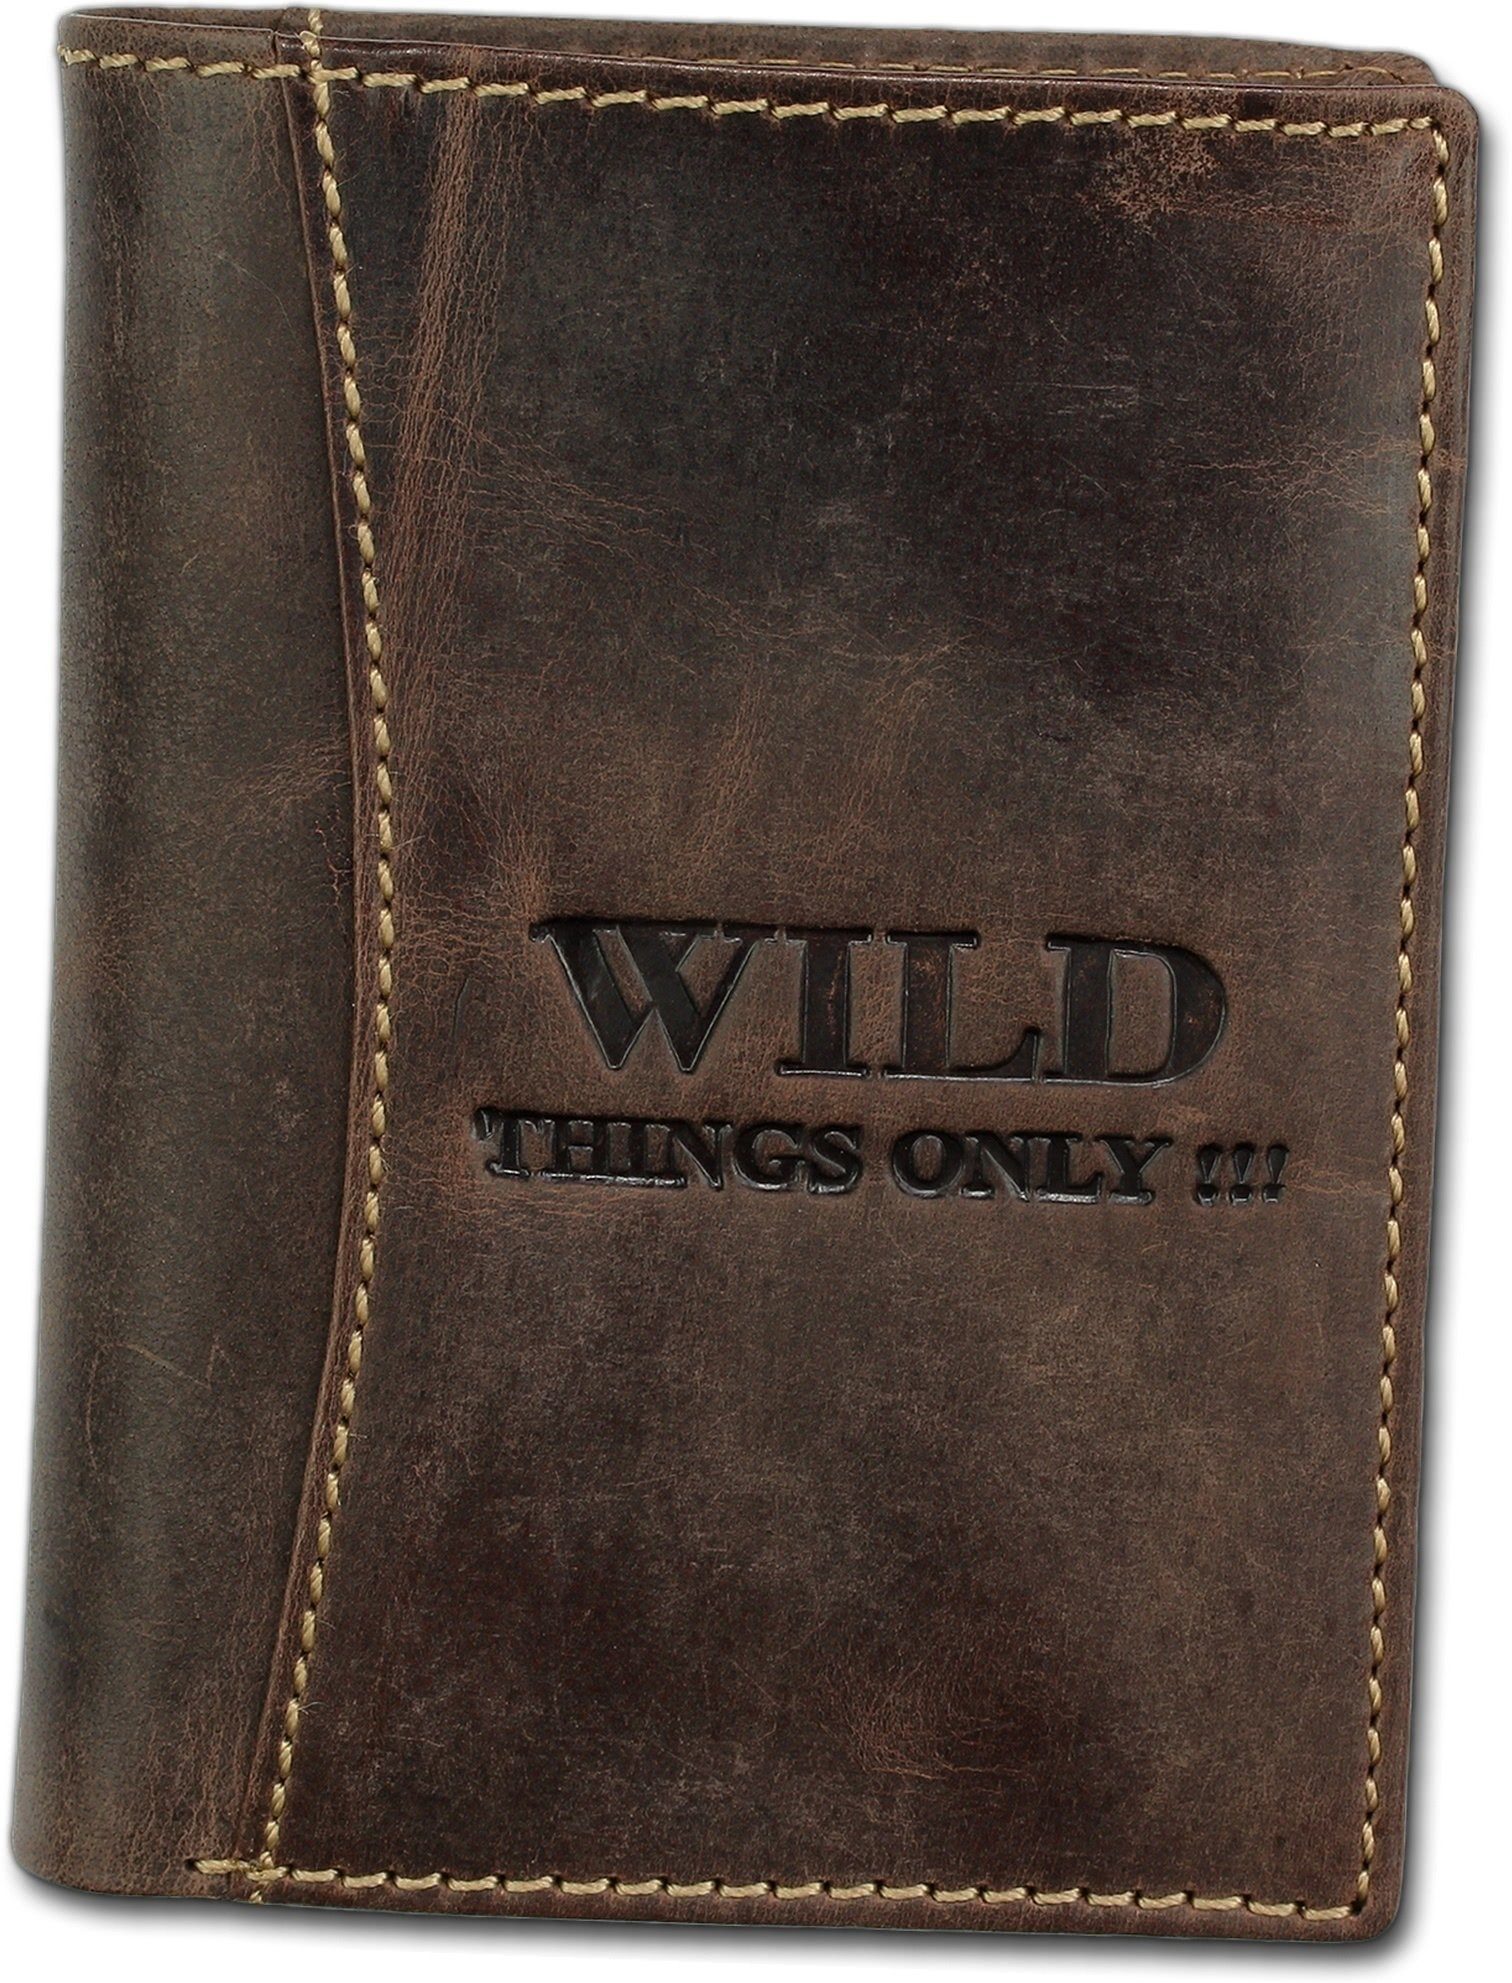 Wild Things Only !!! Geldbörse Wild Things Only Ledergeldbörse Unisex (Portemonnaie, Portemonnaie), Portemonnaie aus Echtleder braun, Größe ca. 9,5cm